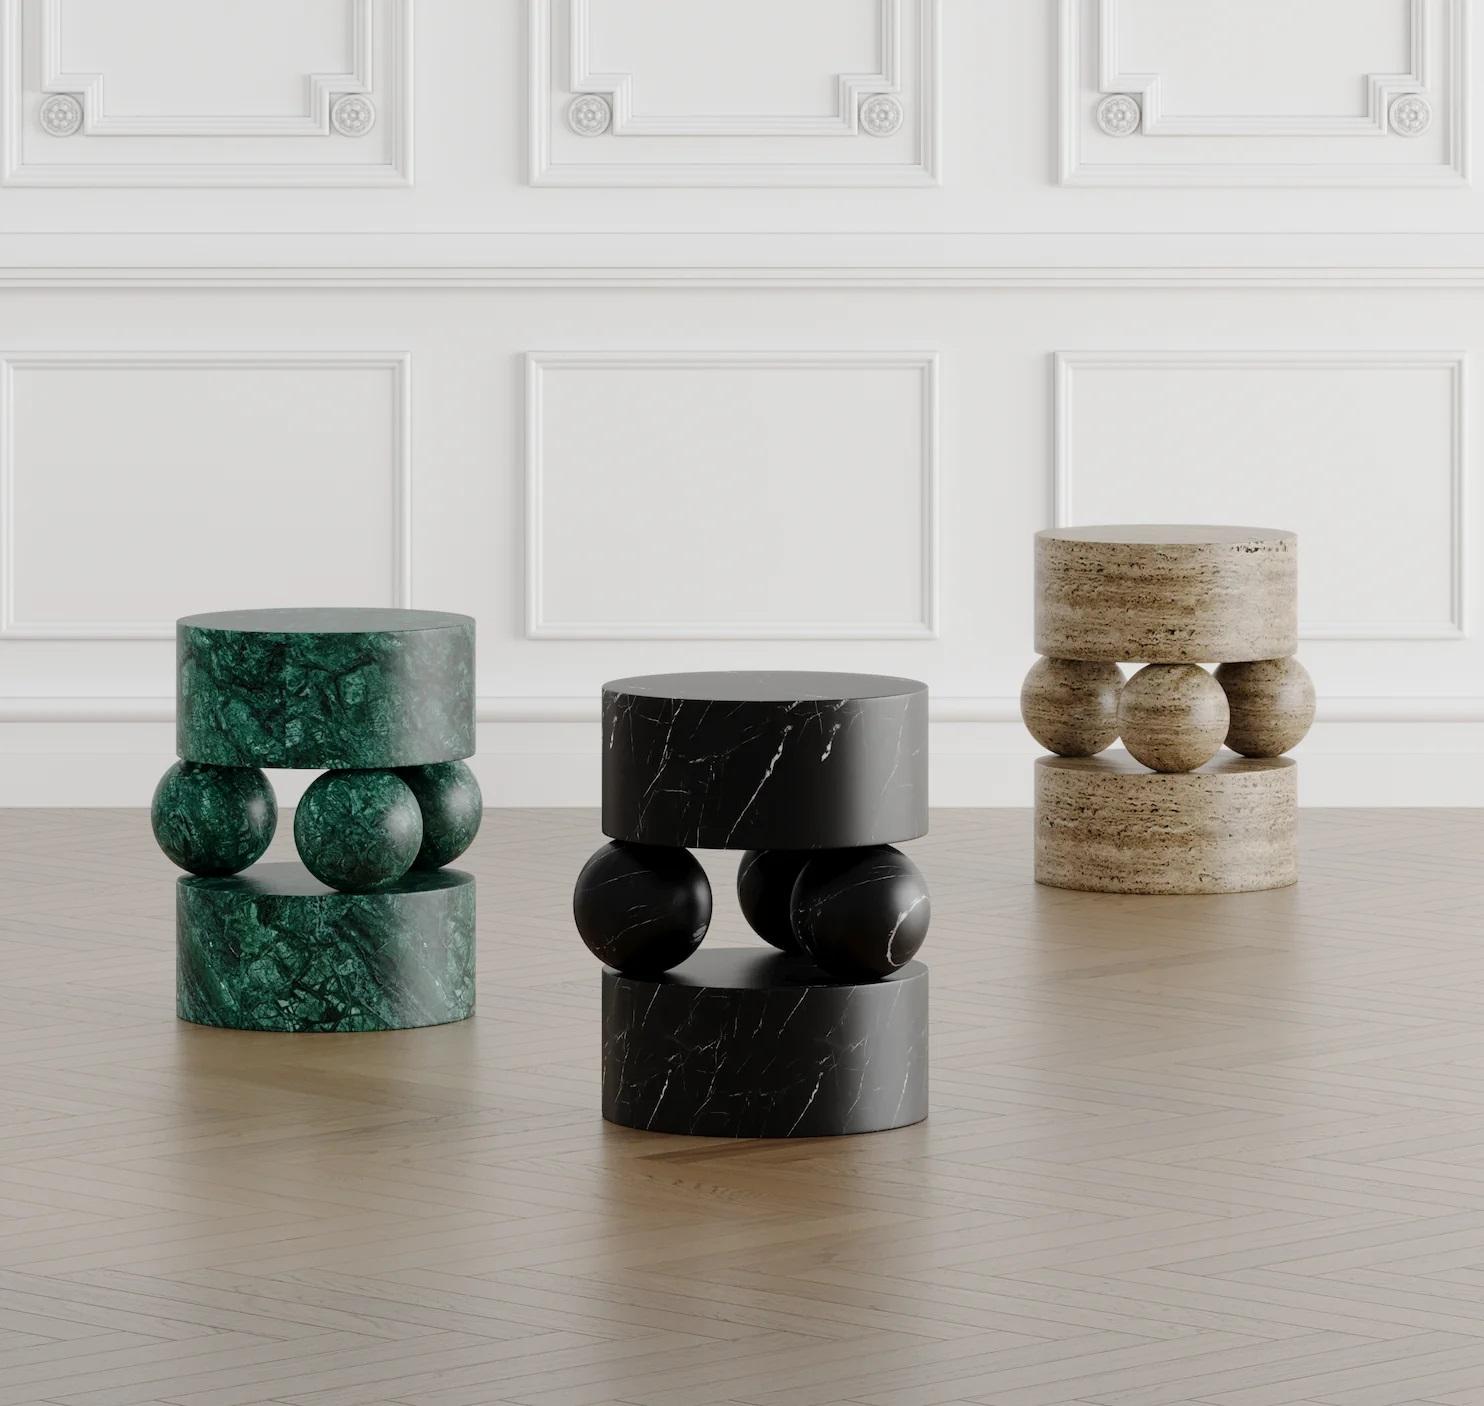 Voici la table d'appoint en marbre Osaka, une fusion harmonieuse de l'art et de la fonctionnalité qui transcende les meubles ordinaires. Méticuleusement taillé à la main dans de la pierre pure, il constitue un témoignage retentissant du design